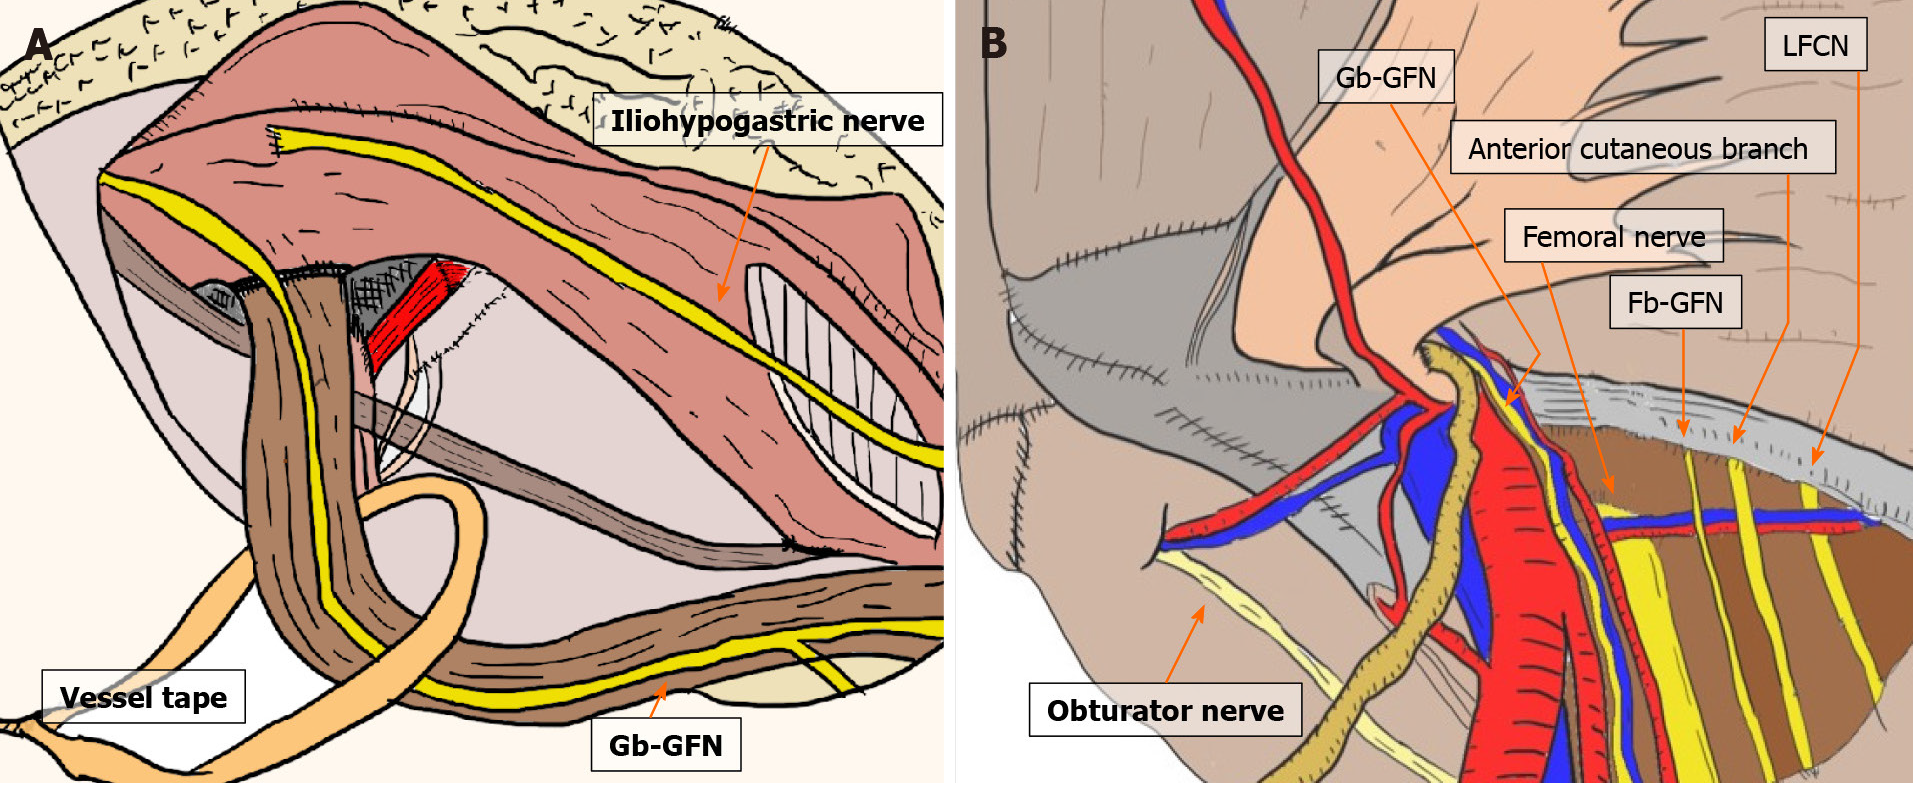 Anatomy - Femoral hernia repair – TIPP technique